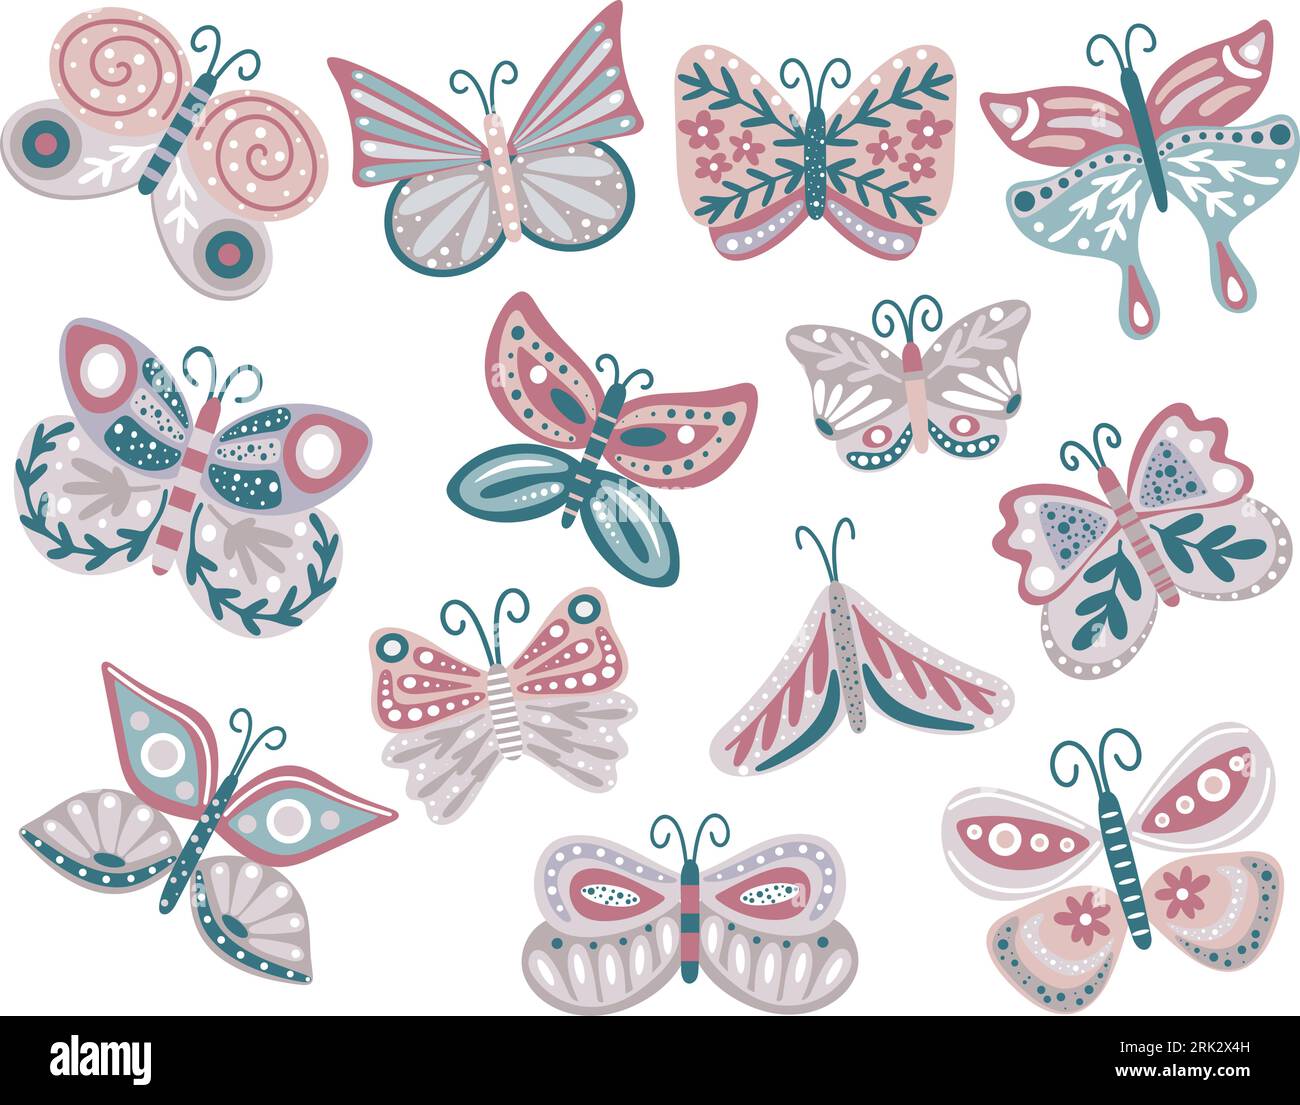 Handgezeichnete Sammlung von Schmetterlingen mit Blumen und Kräutern Stock Vektor